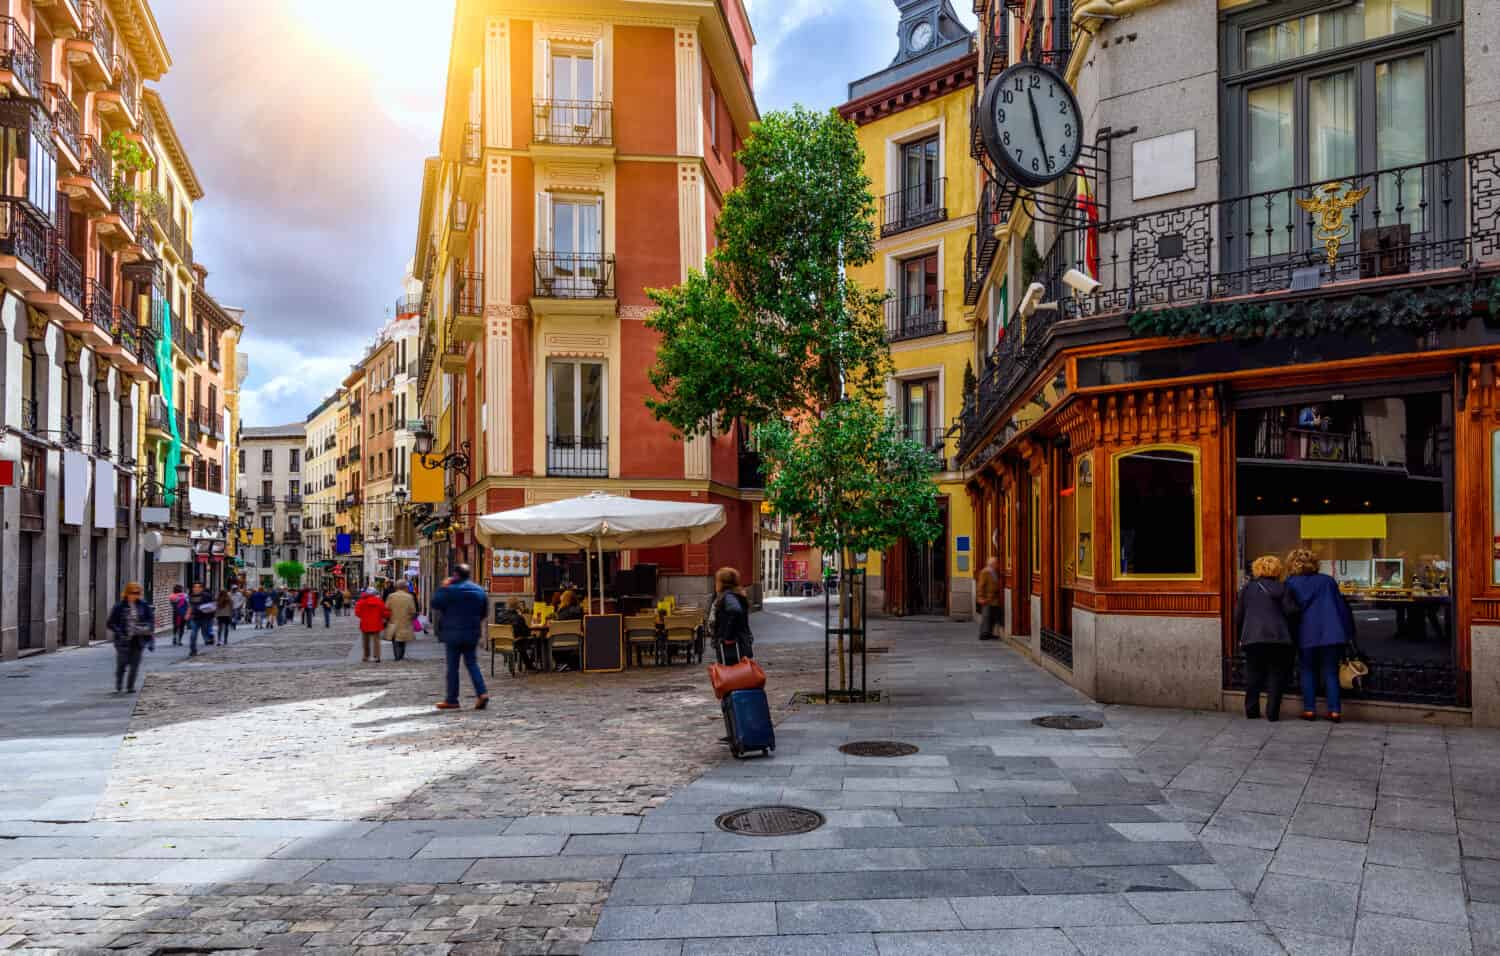 Vecchia strada accogliente a Madrid, Spagna.  Architettura e punto di riferimento di Madrid, cartolina di Madrid